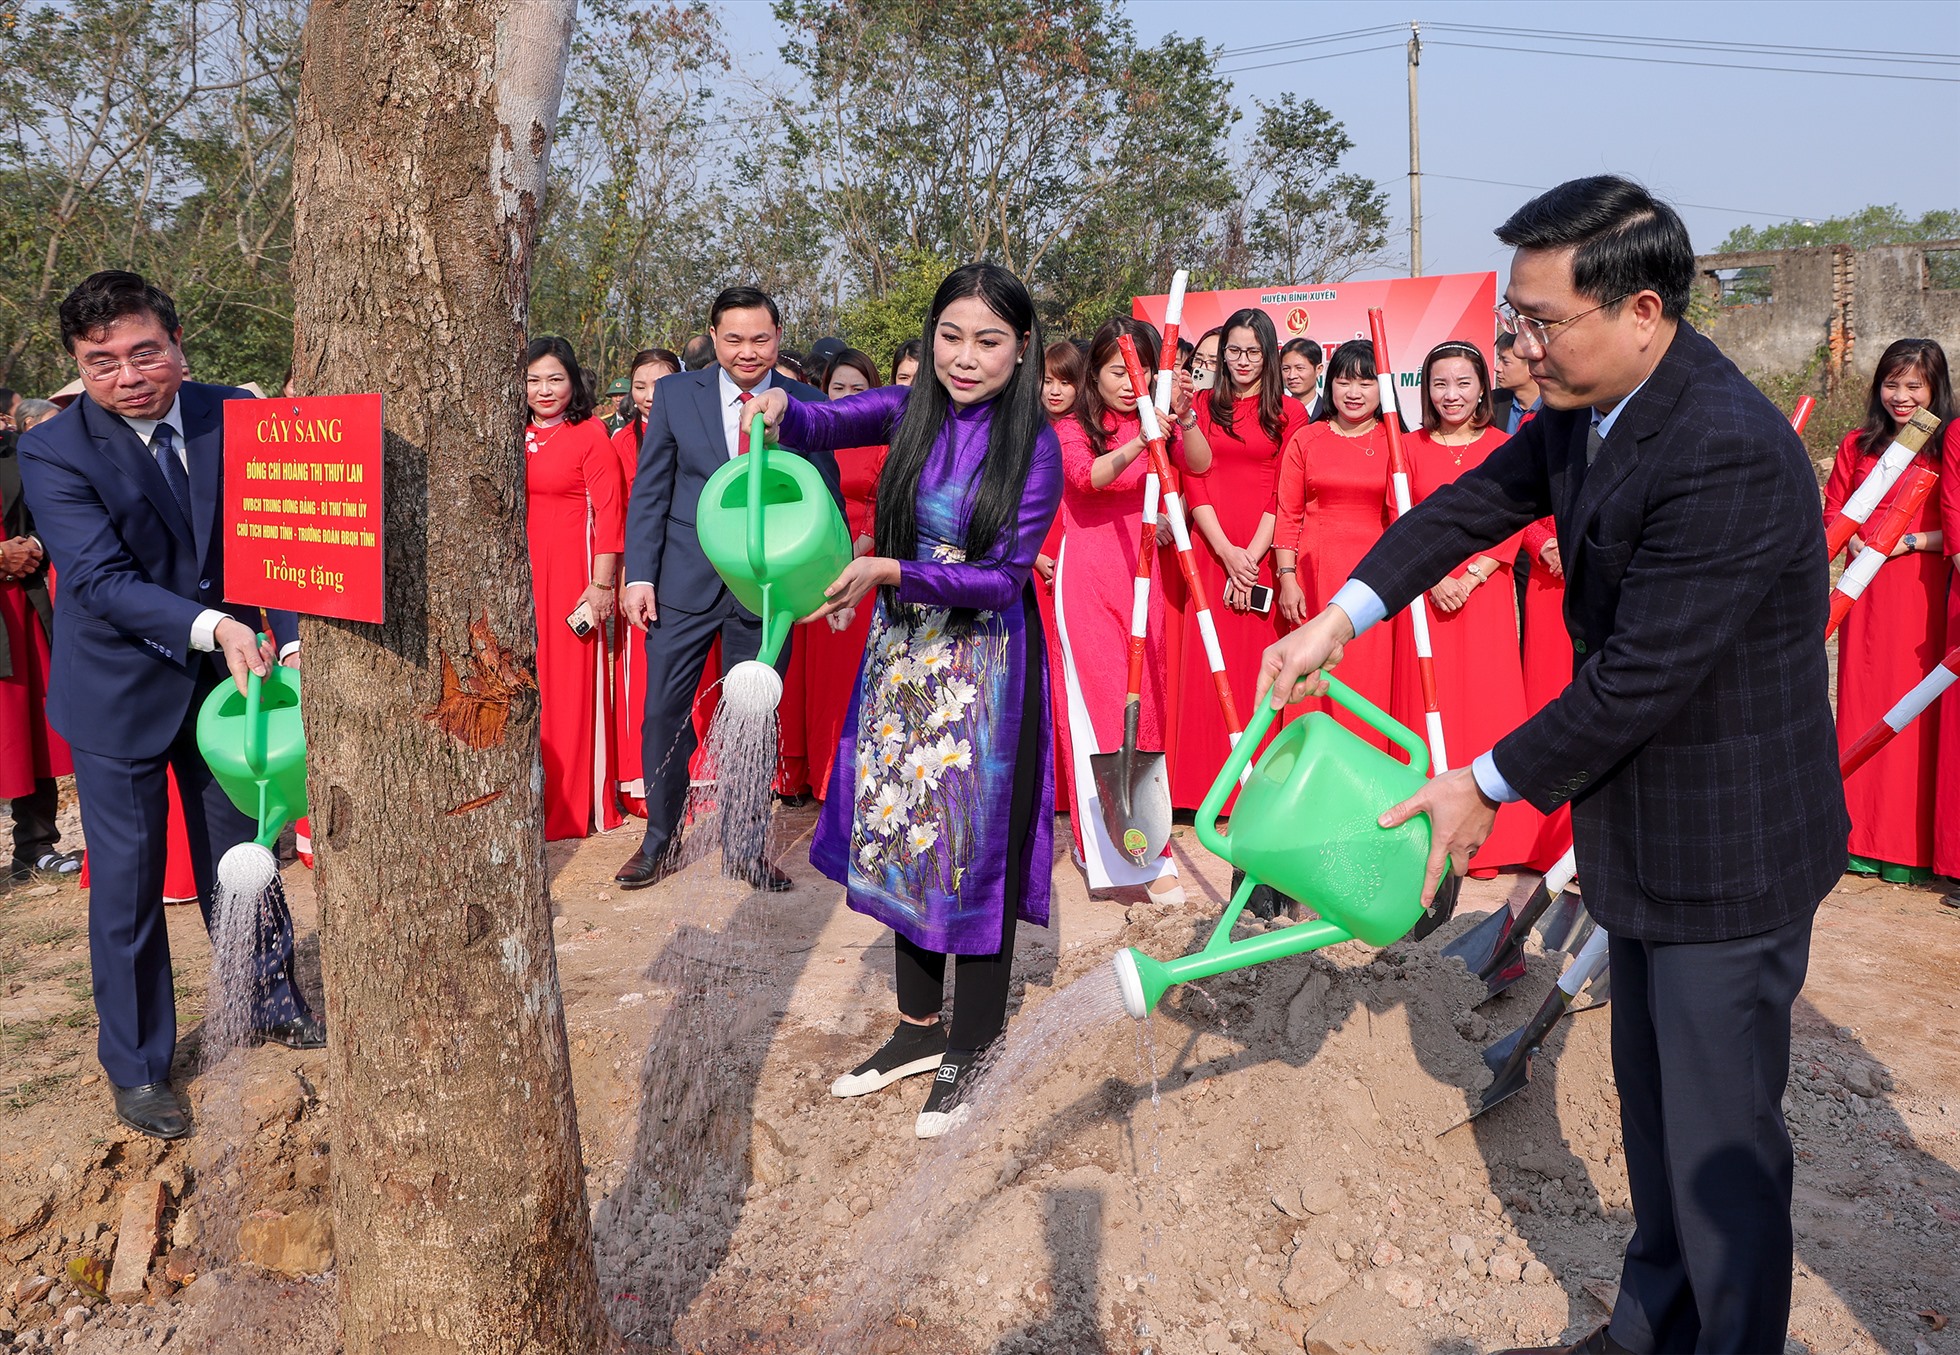 Lãnh đạo tỉnh Vĩnh Phúc và các đại biểu trồng cây trong ngày khởi công công trình Làng văn hóa kiểu mẫu tại tổ dân phố Tam Quang. Ảnh: Khánh Linh